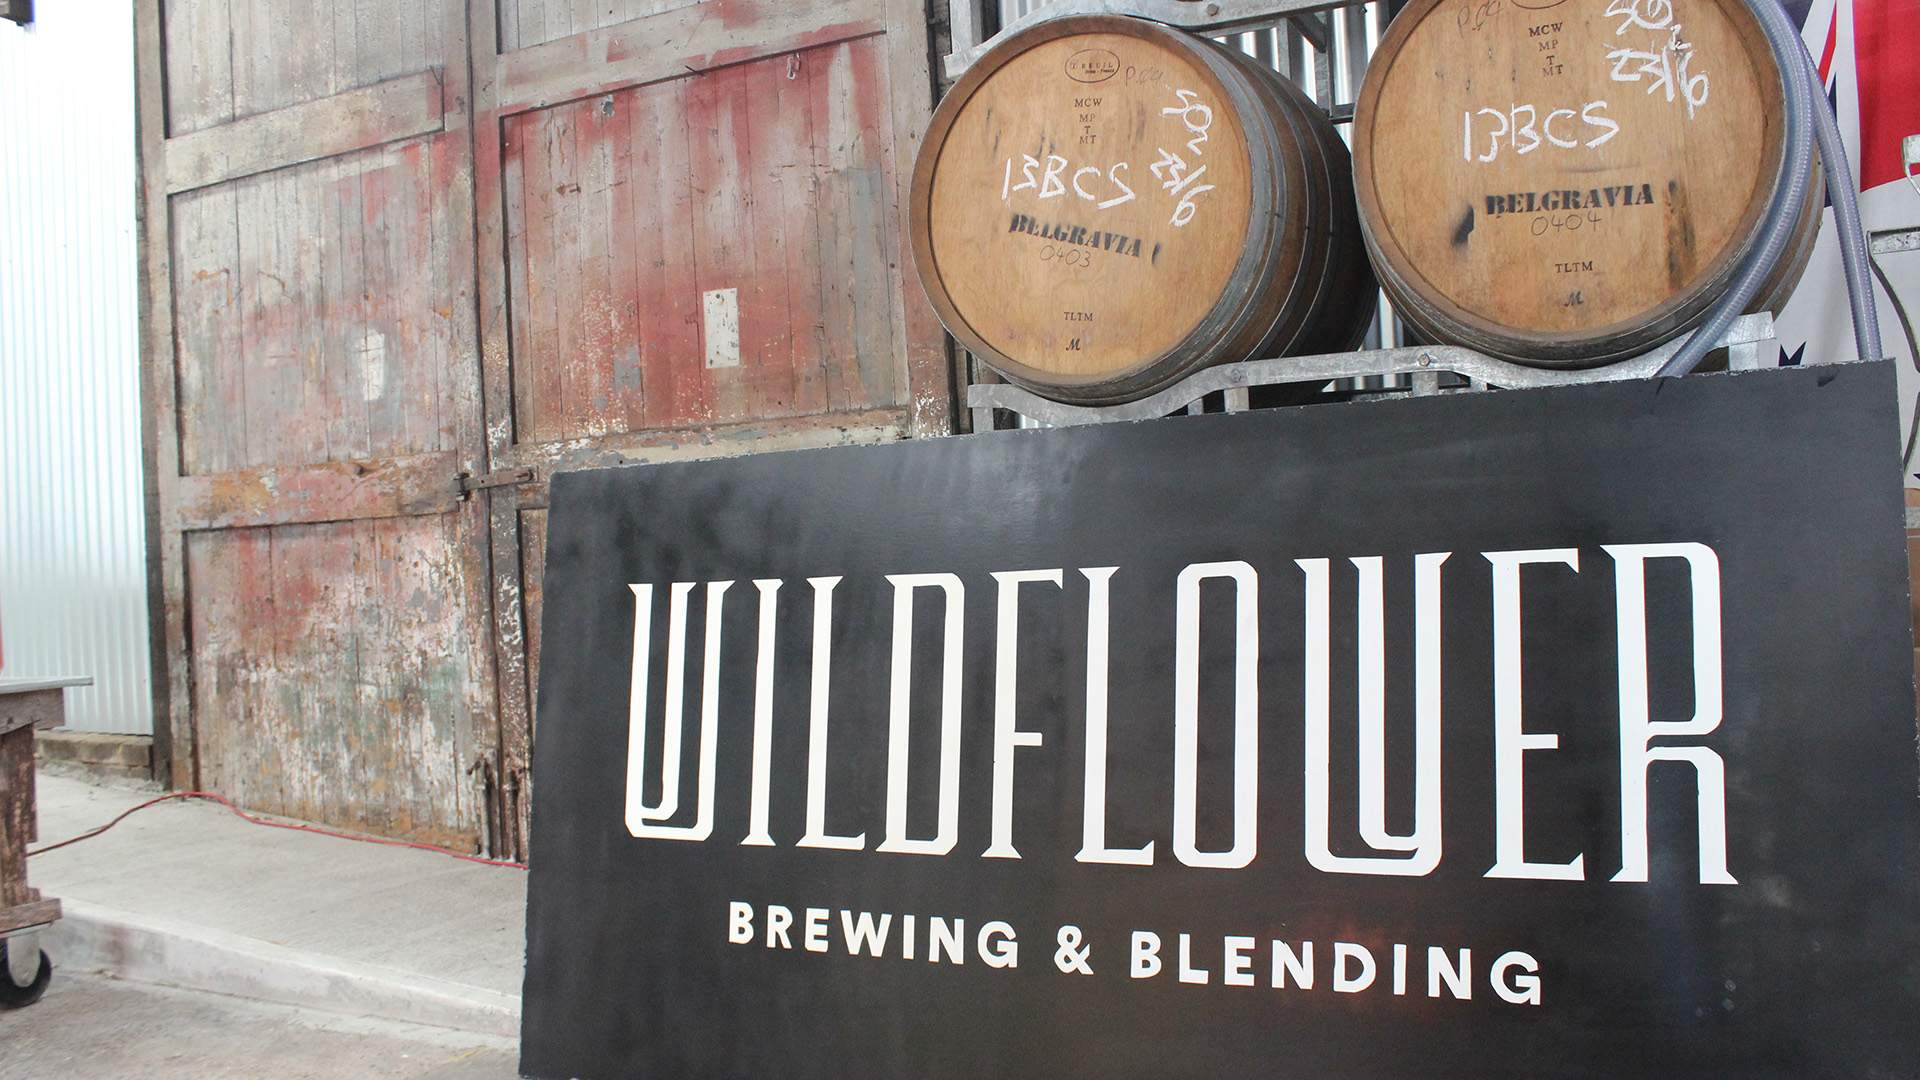 Meet Sydney's New Barrel-Aged Wild Beer Brewery, Wildflower